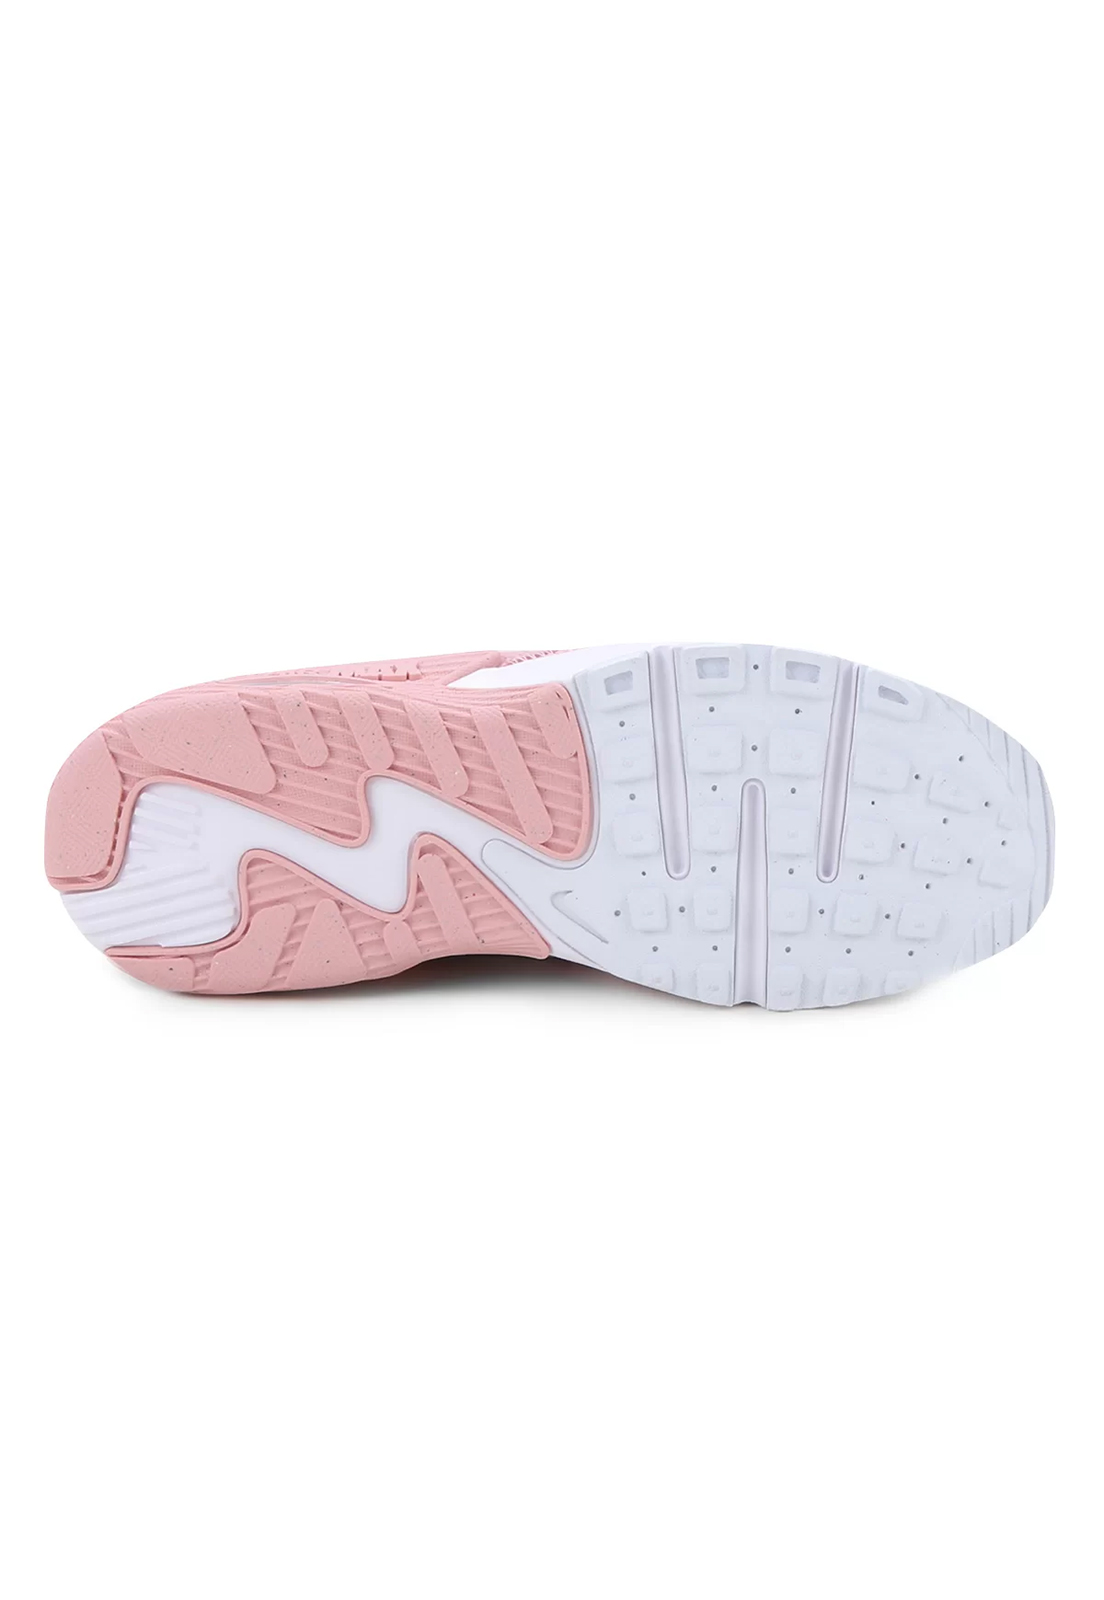 Tênis Nike Air Max Excee Feminino - Rosa+Branco